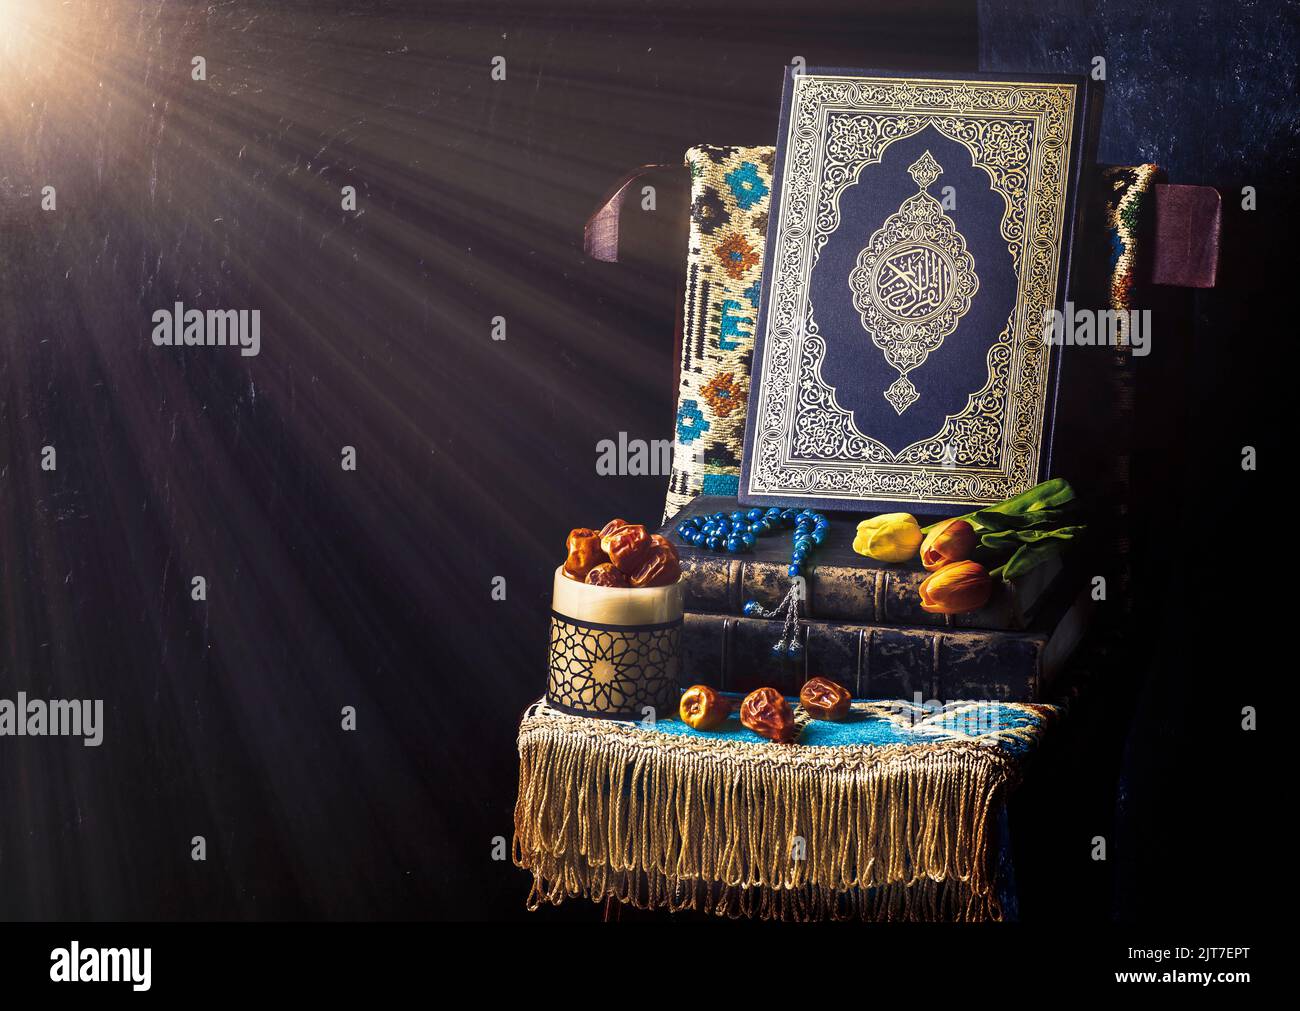 Le Saint-Livre islamique 'Coran' entouré de rayons lumineux et placé avec des perles rosaires, des dattes fraîches, des fleurs de tulipe et un tapis de prière sur une chaise en bois. Banque D'Images